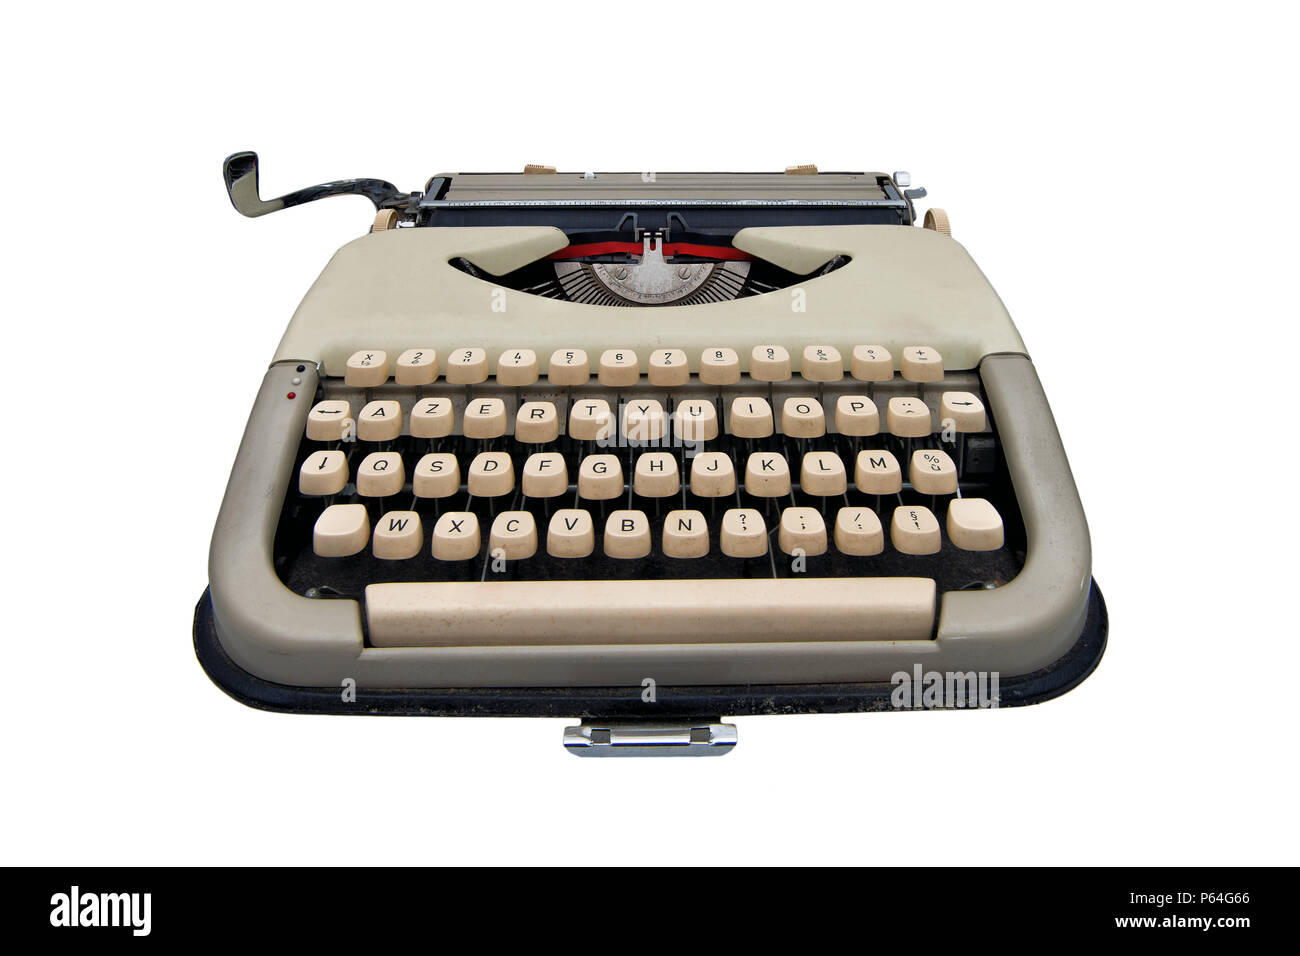 vintage typewriter isolated on white background Stock Photo